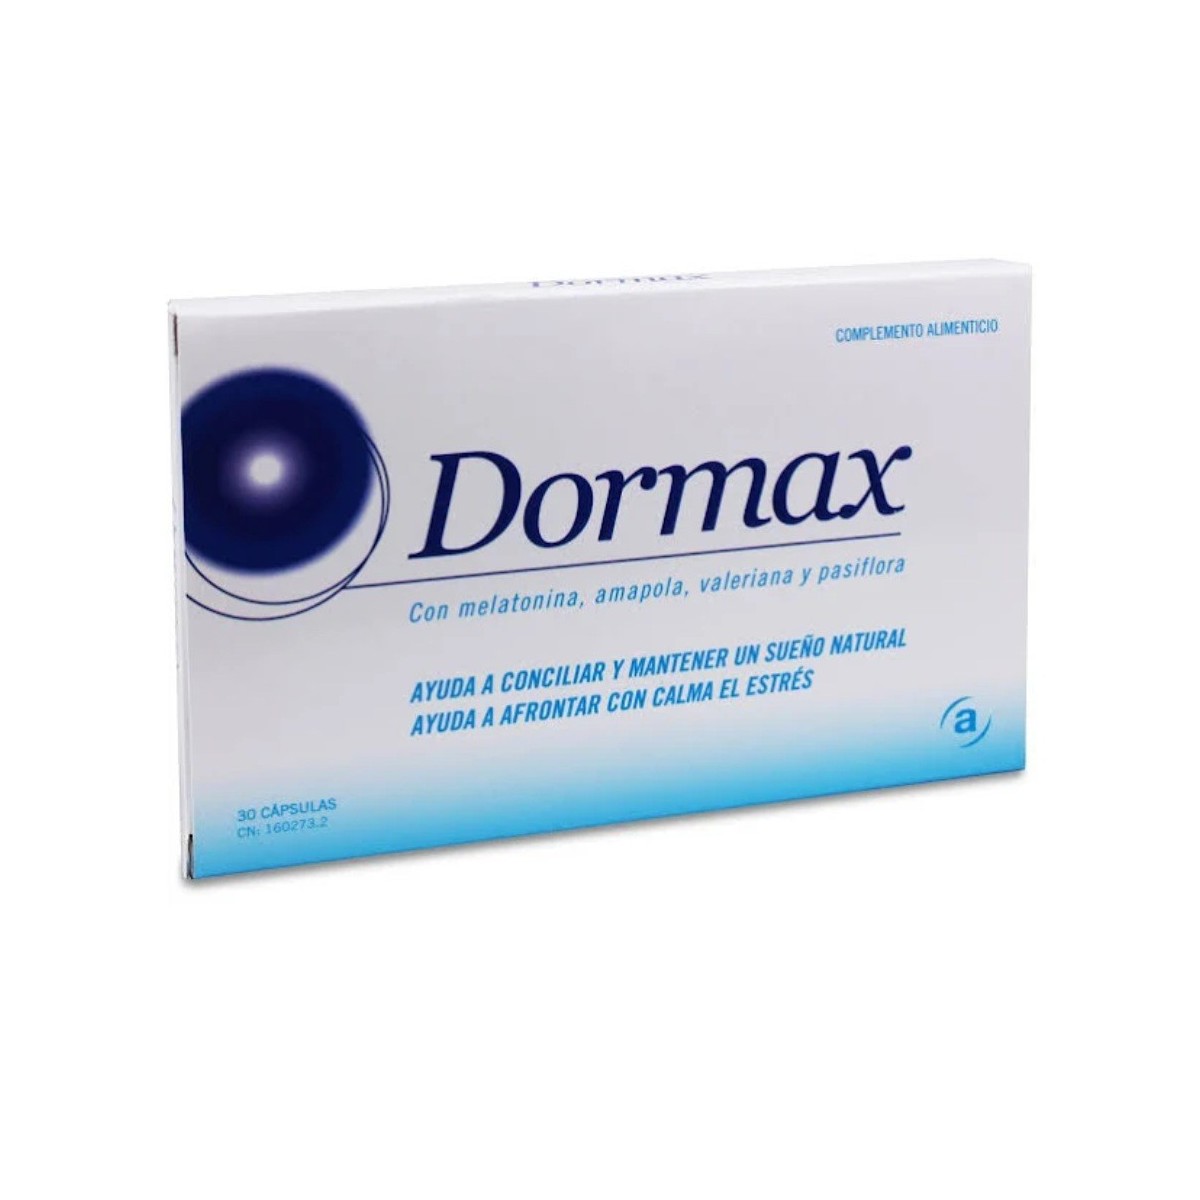 dormax 30 capsulas